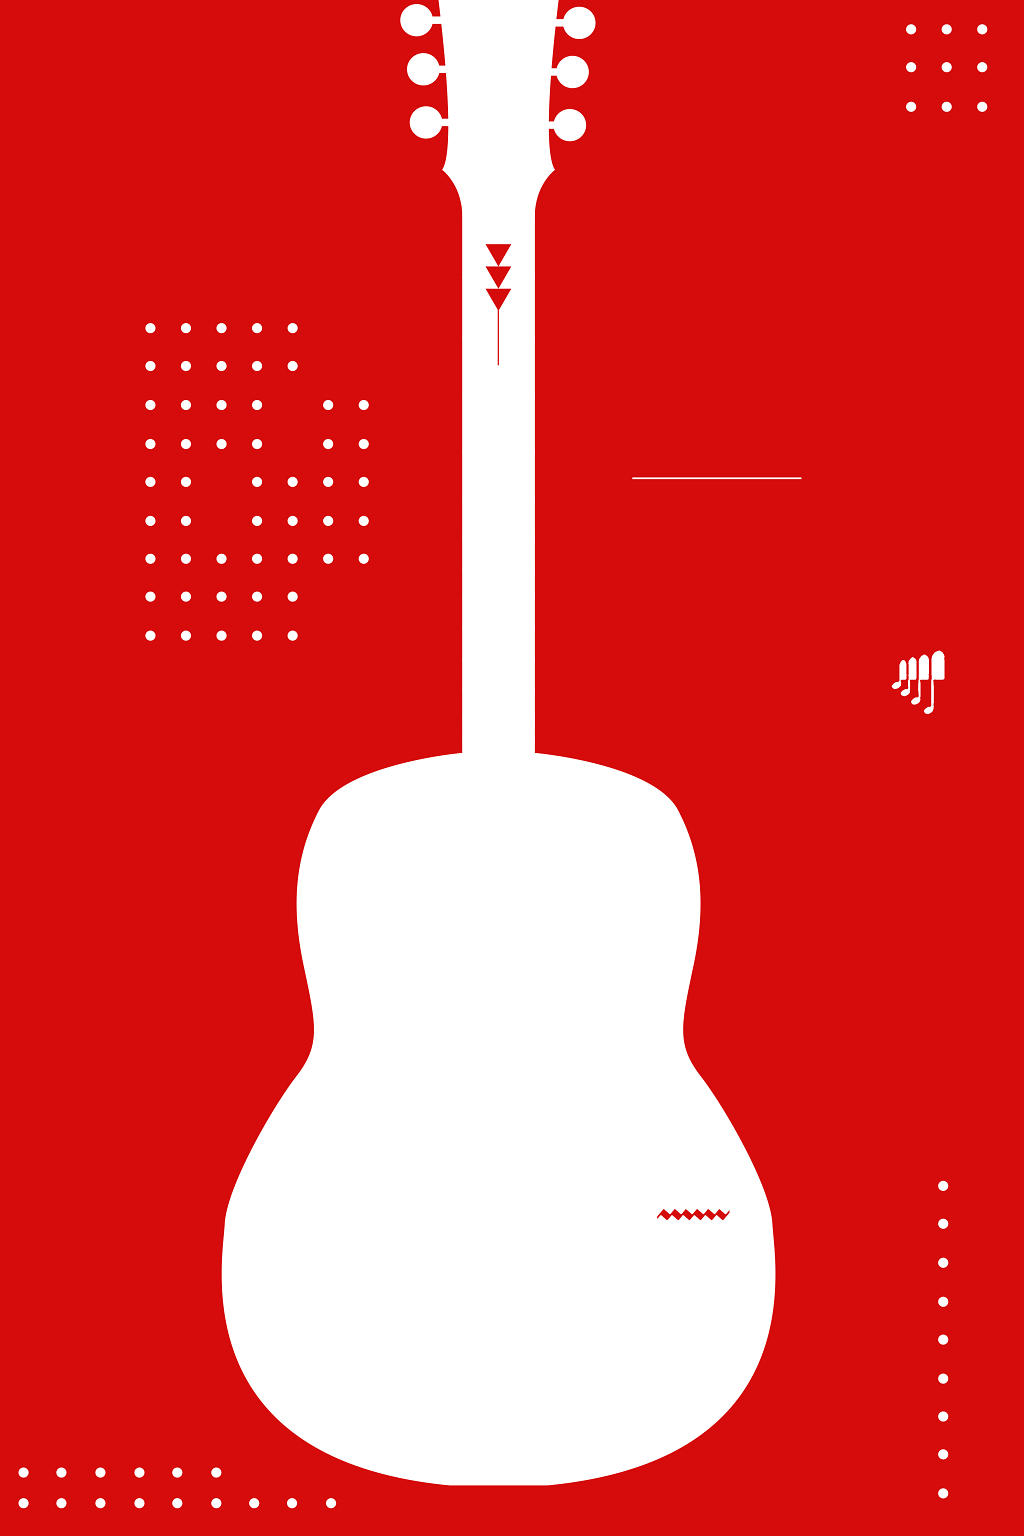 简约红色吉他创意音乐节海报背景